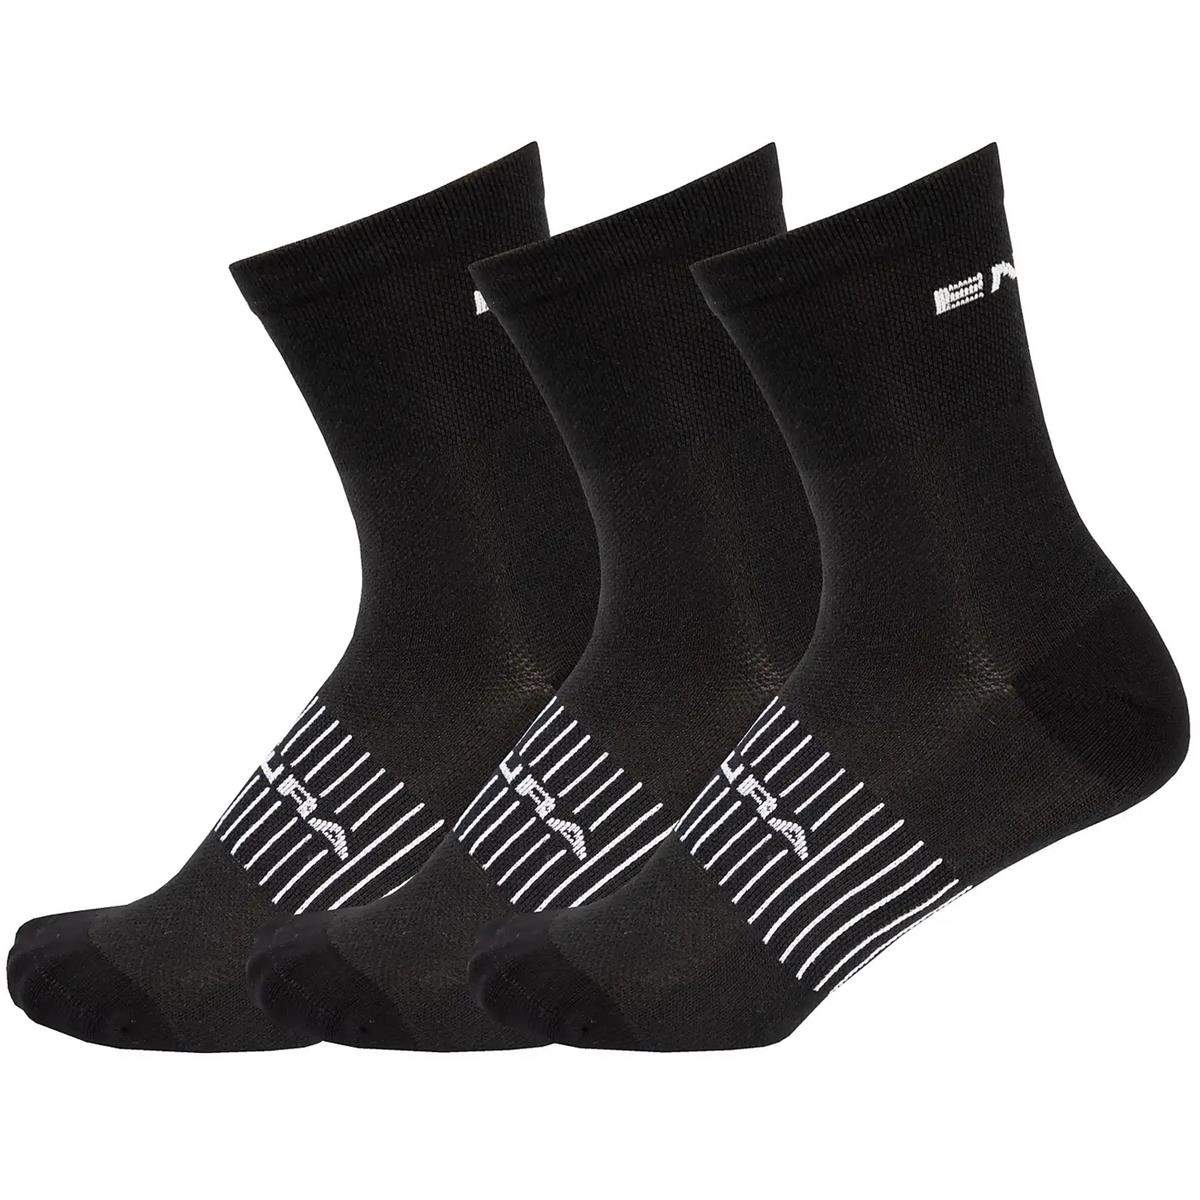 Endura MTB Socks Coolmax Race 3 Pack, Black